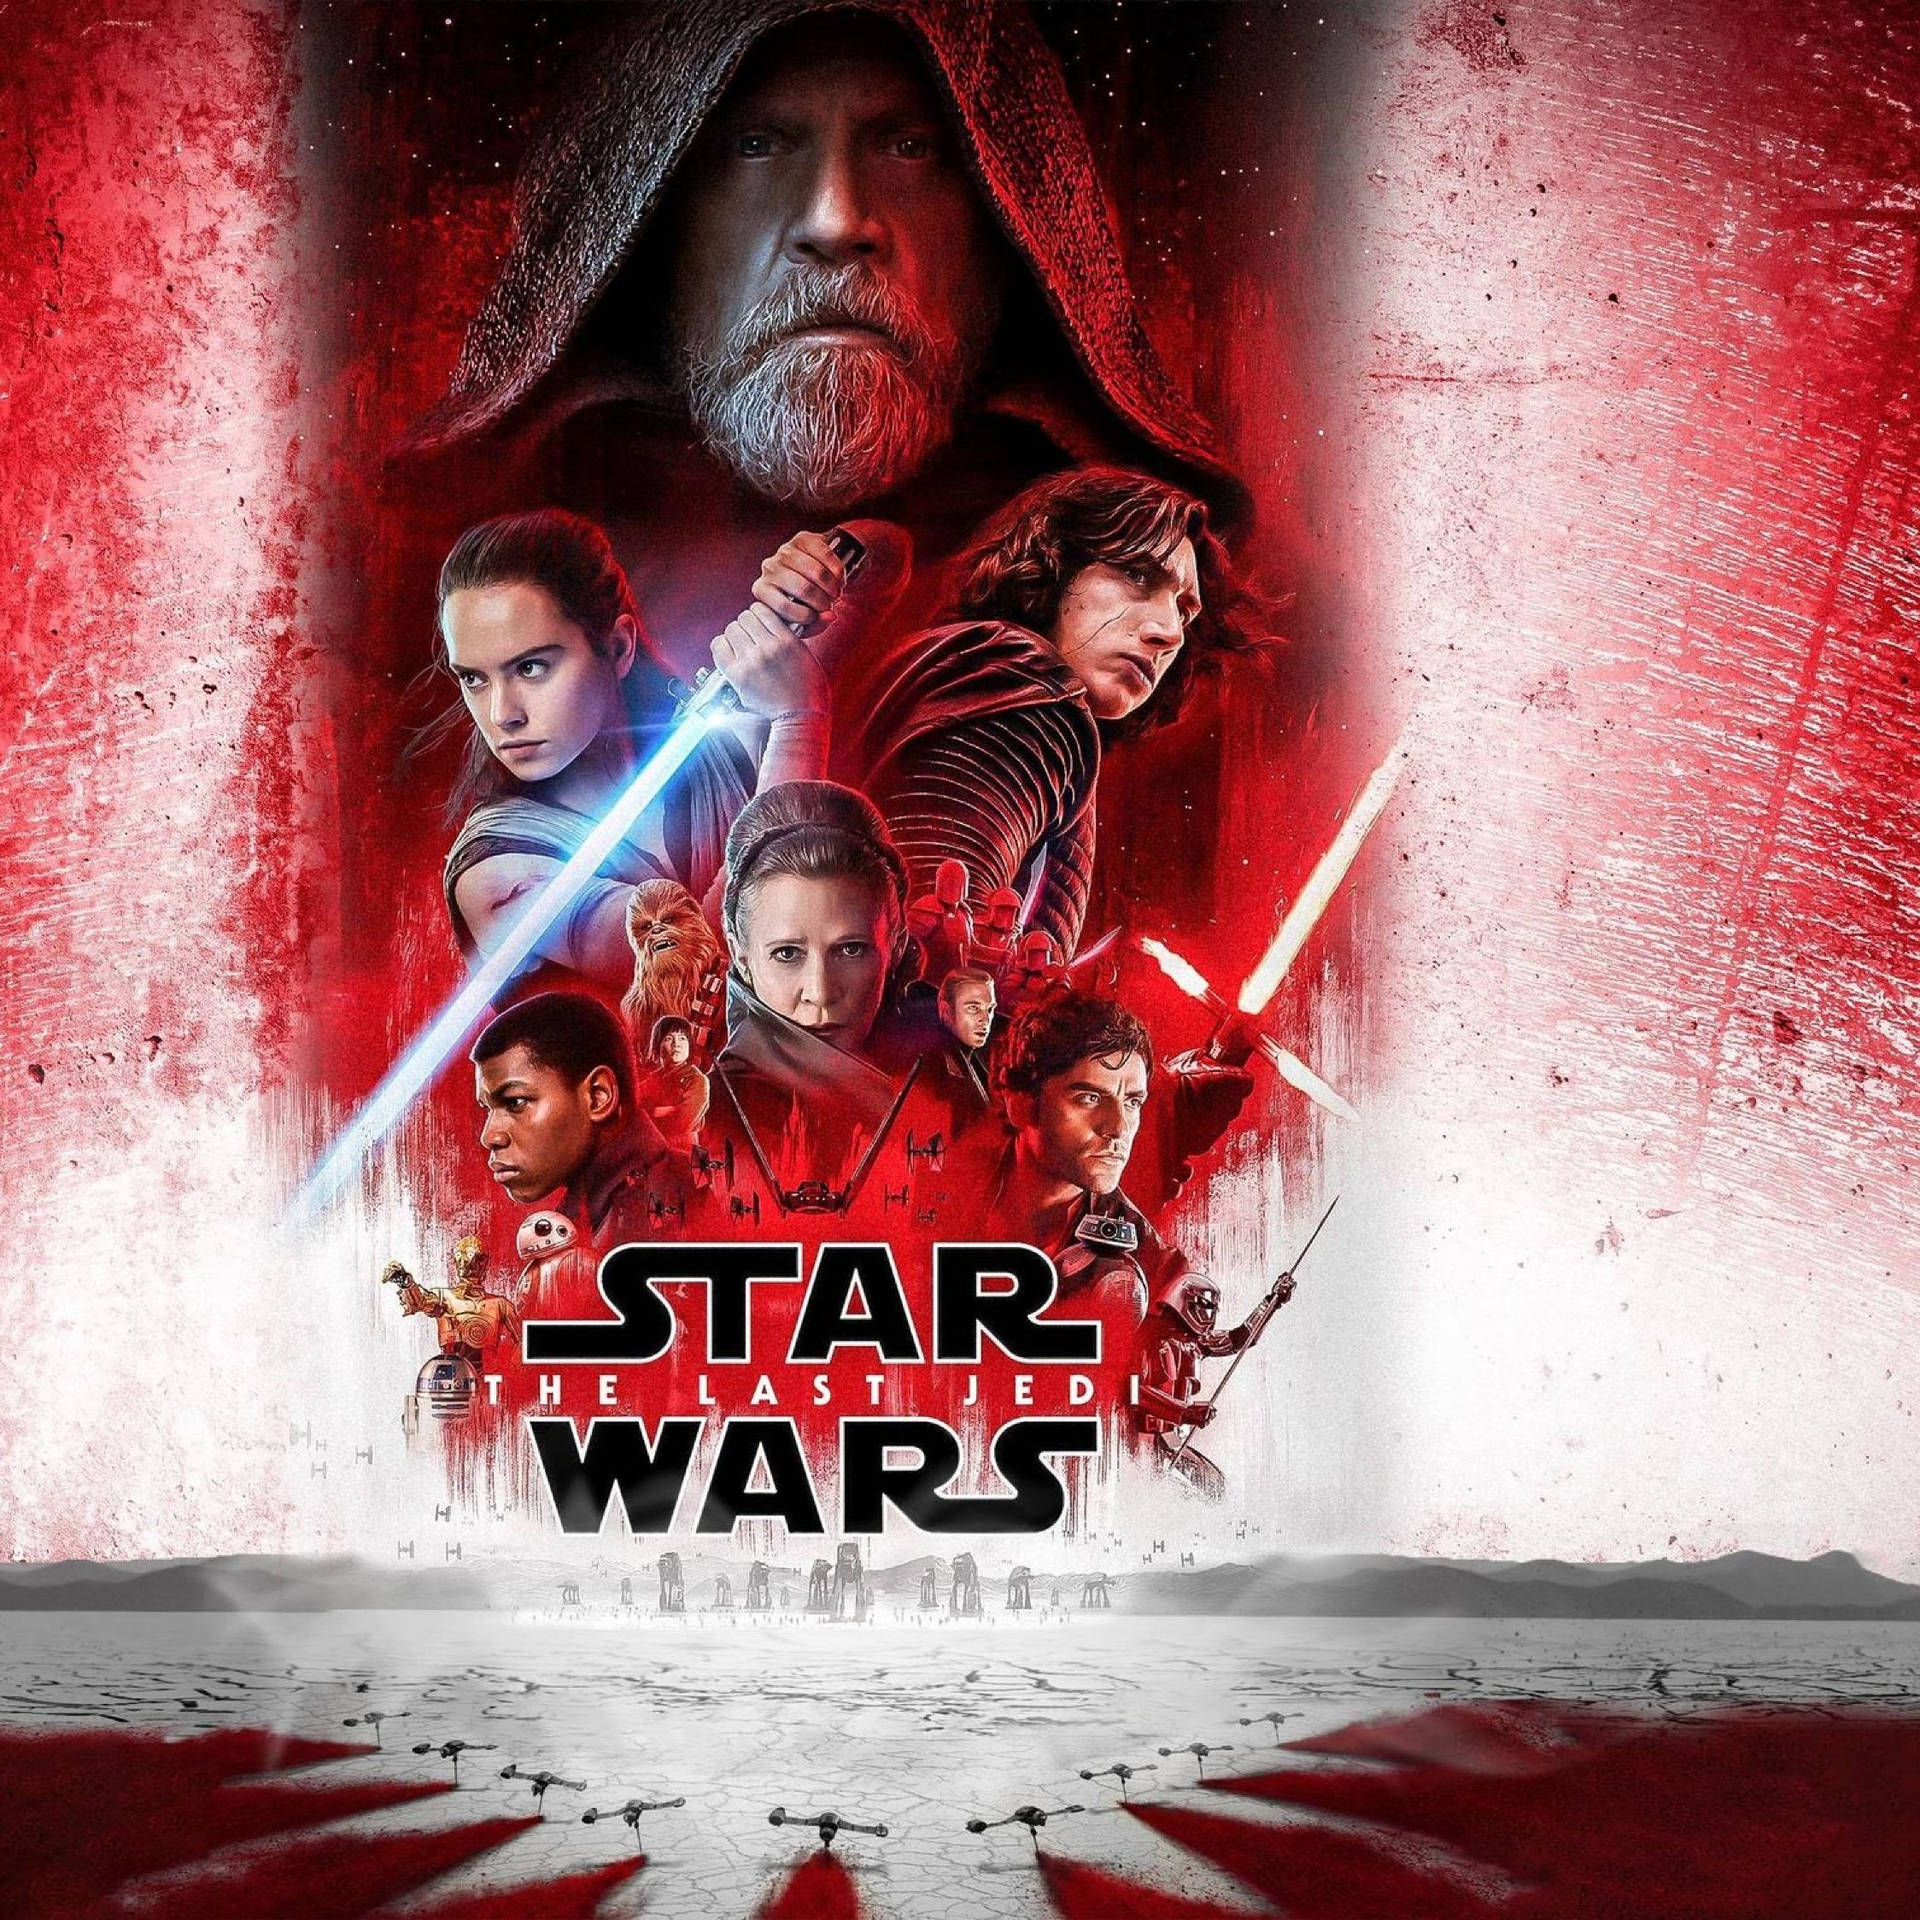 Star Wars: The Last Jedi, Full Movie